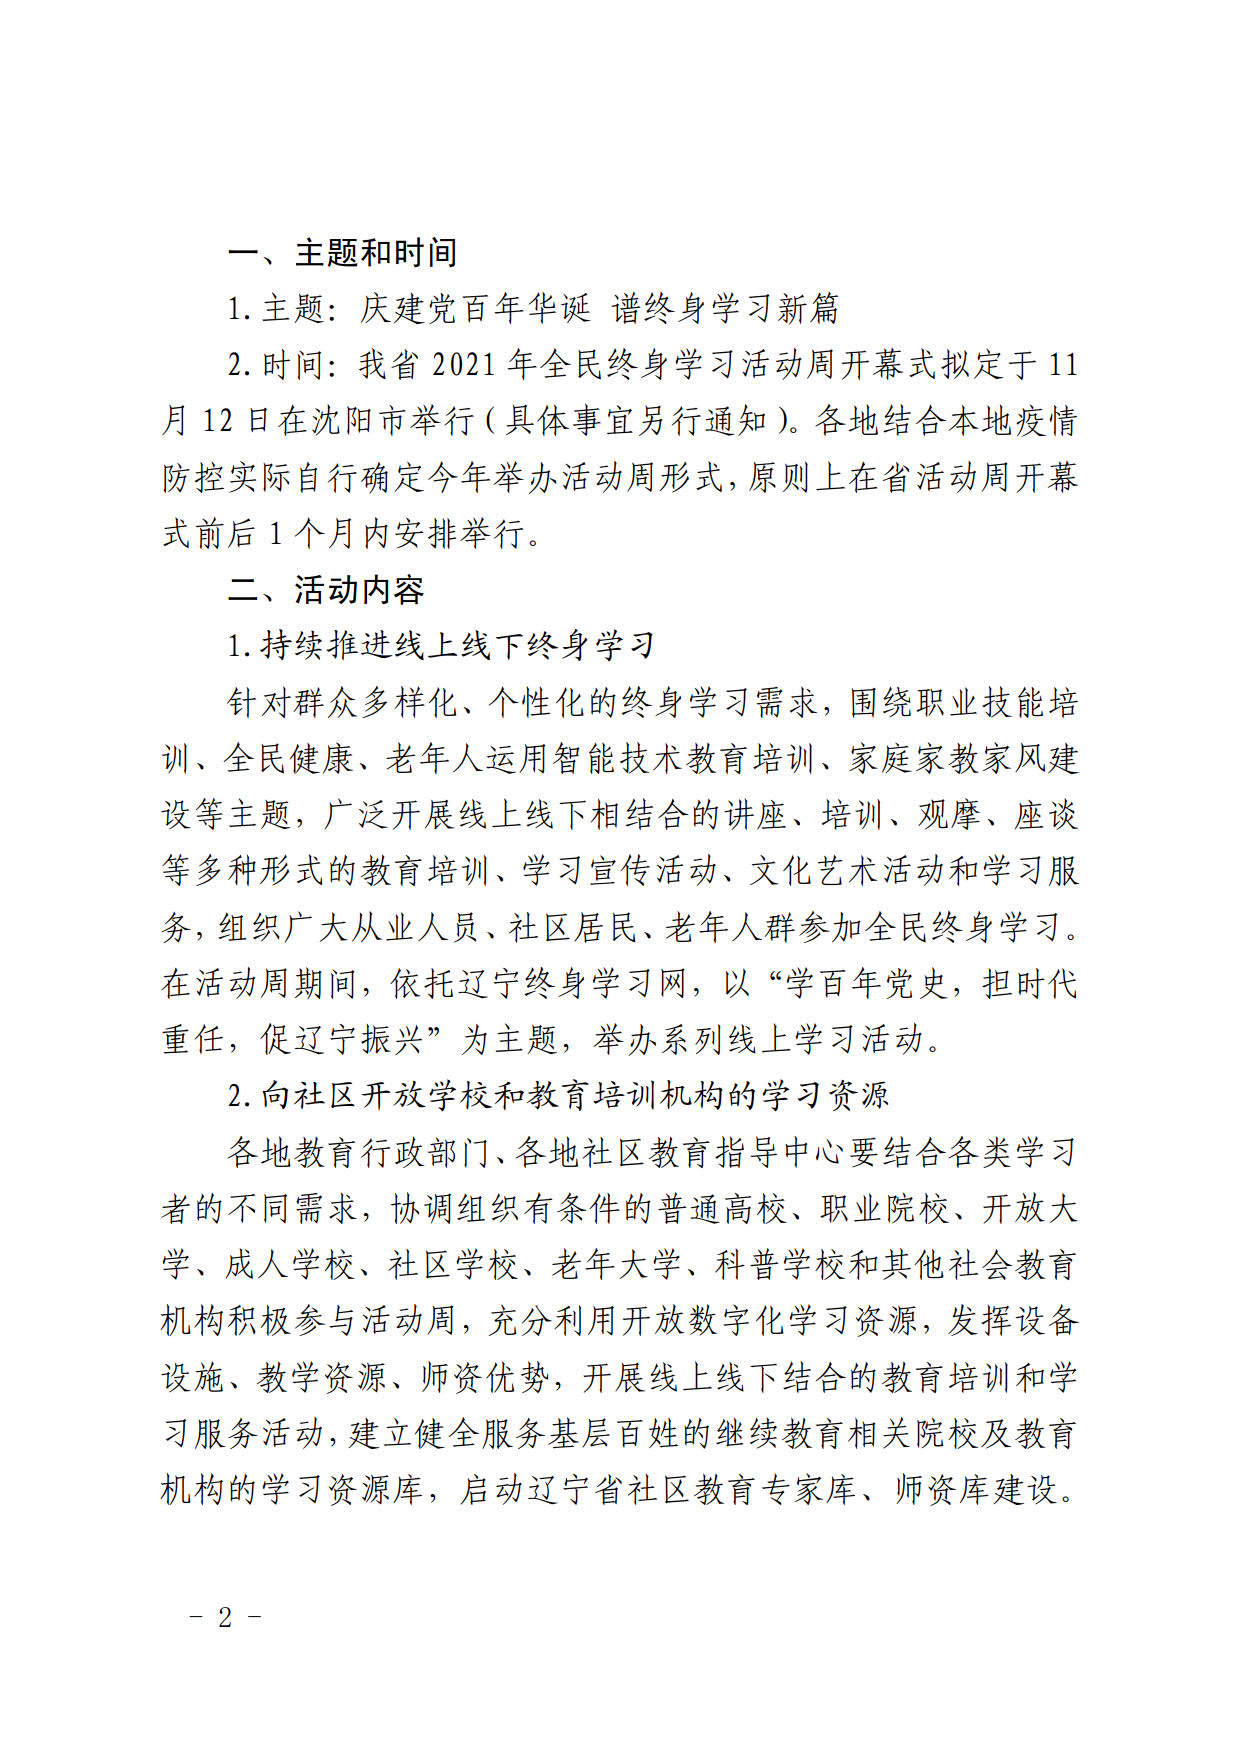 辽宁省教育厅办公室关于做好2021年全民终身学习活动周工作的通知(2)_3.jpg